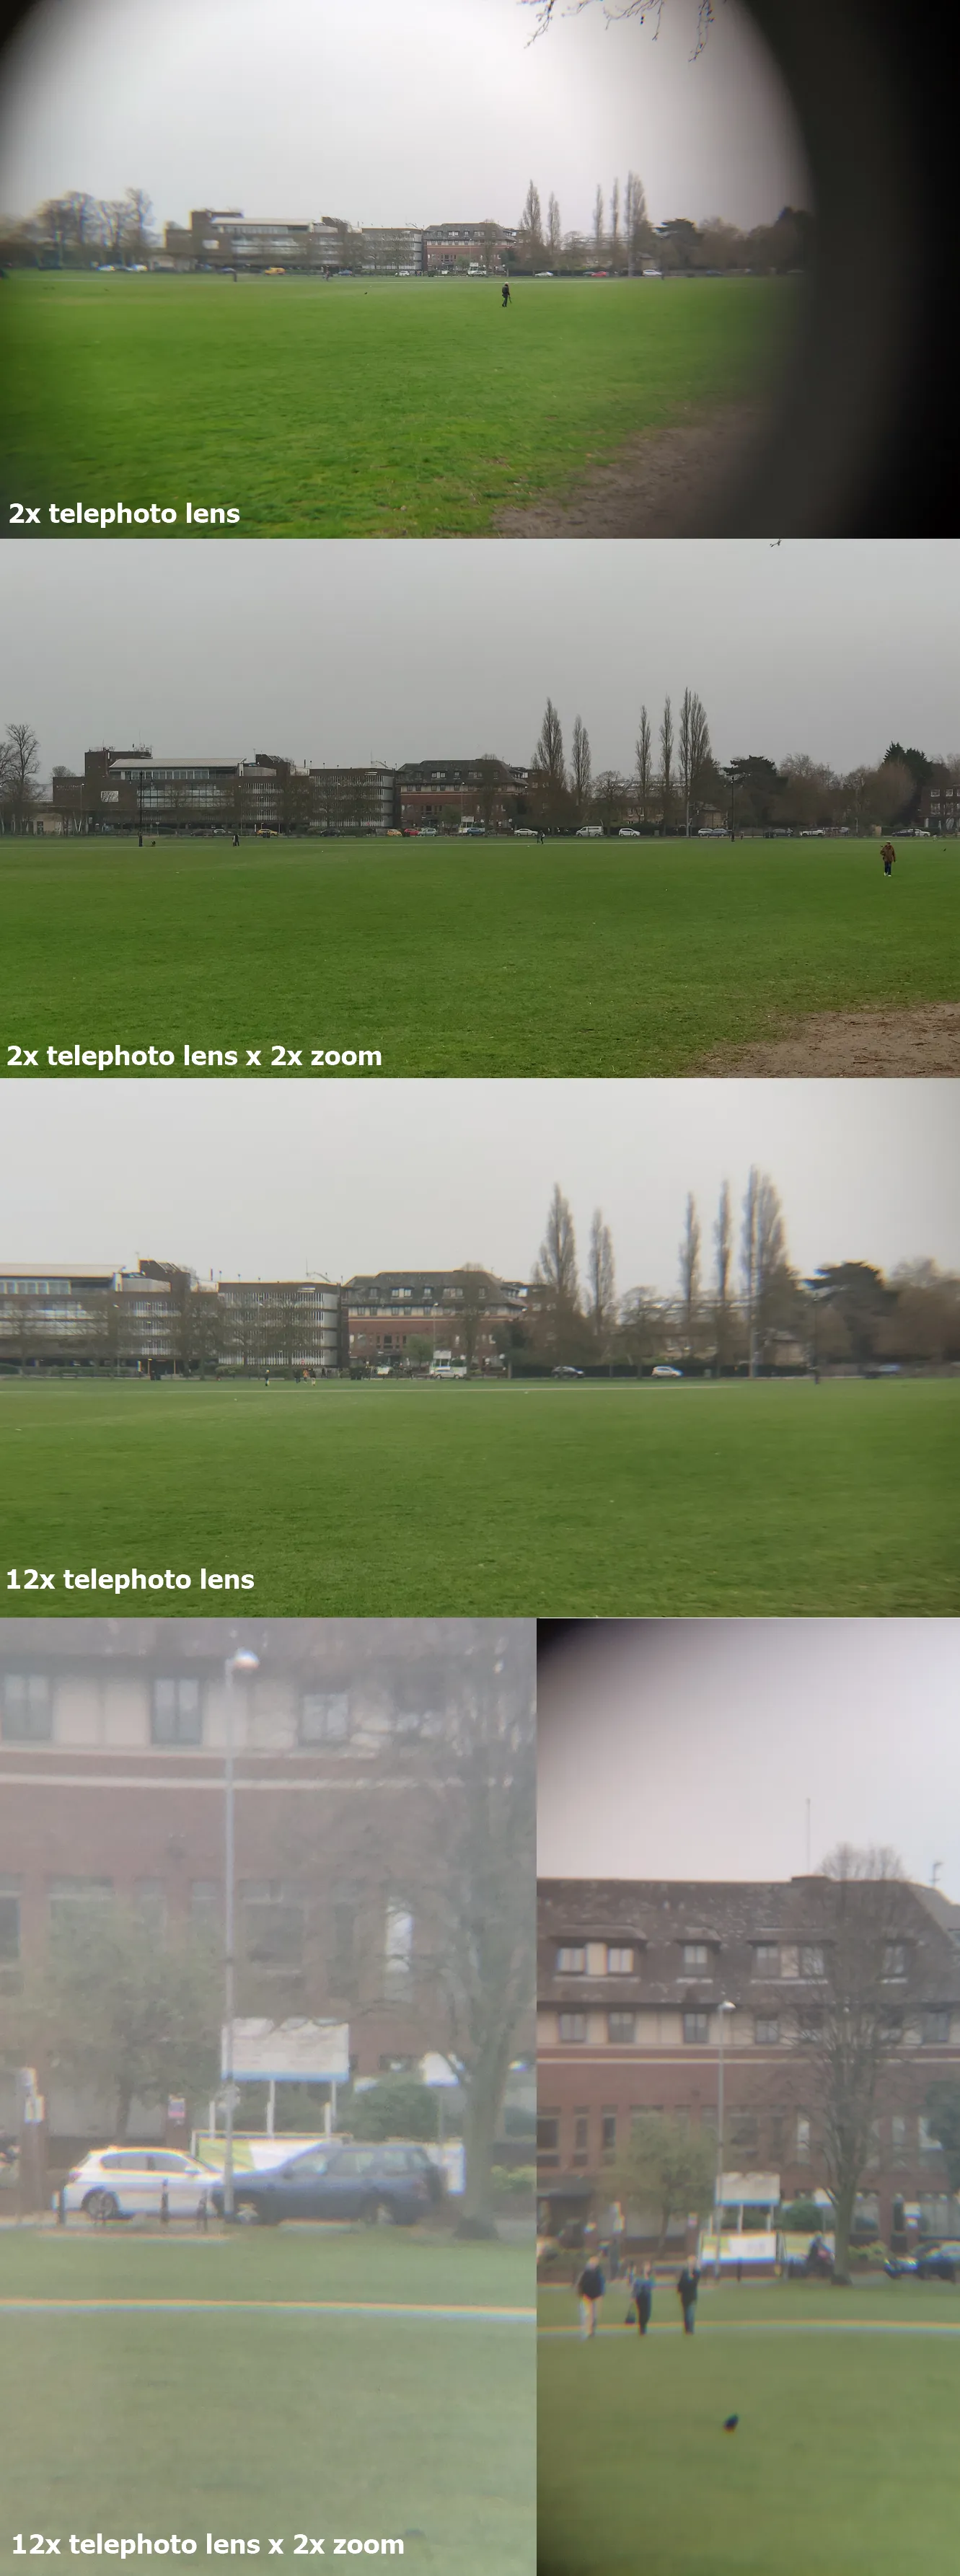 Xiaomi Mi 8 telephoto lens test